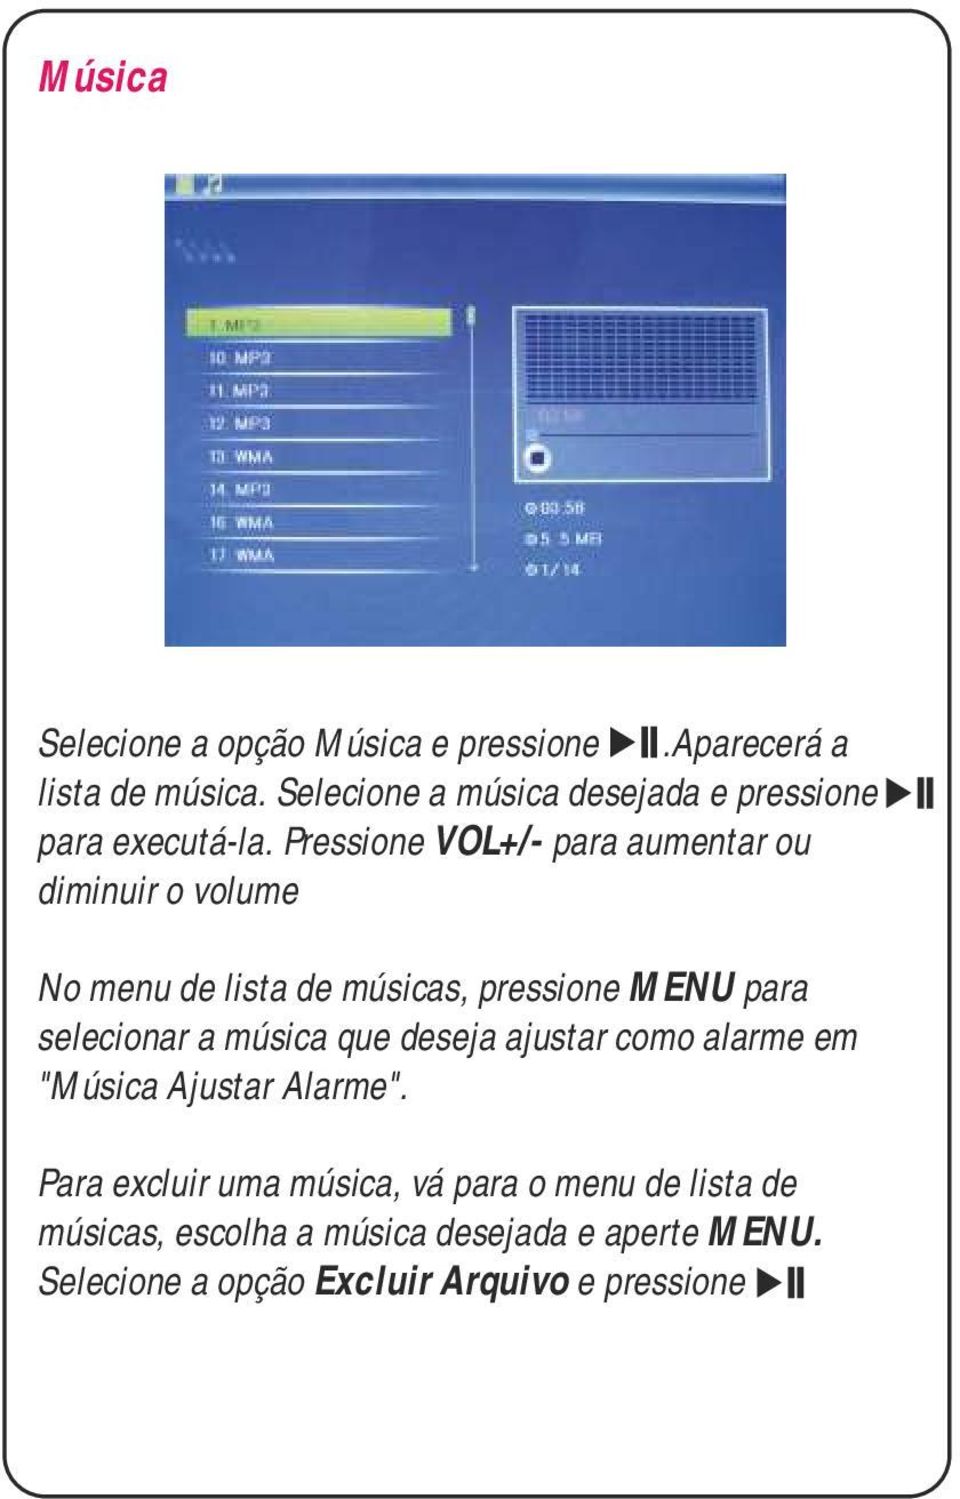 Pressione VOL+/- para aumentar ou diminuir o volume No menu de lista de músicas, pressione MENU para selecionar a